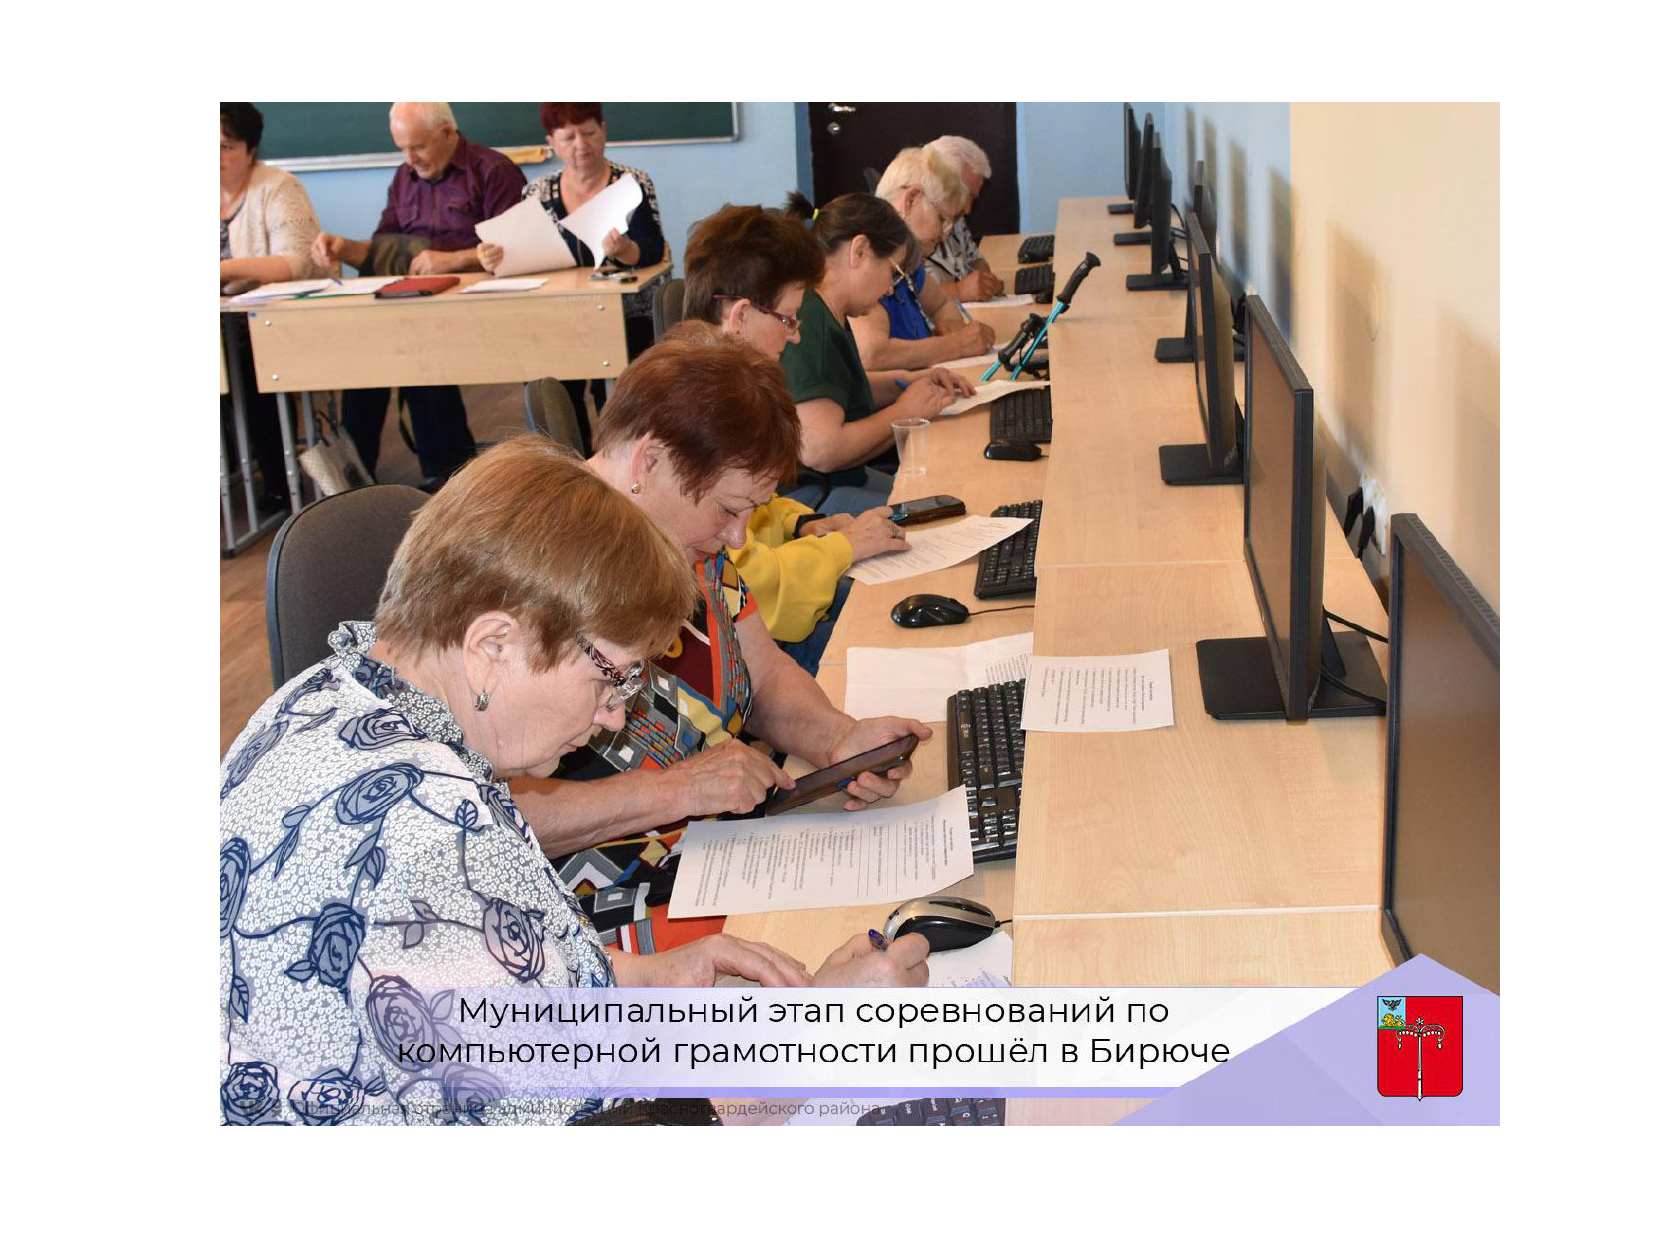 Муниципальный этап соревнований по компьютерной грамотности прошёл в Бирюче.